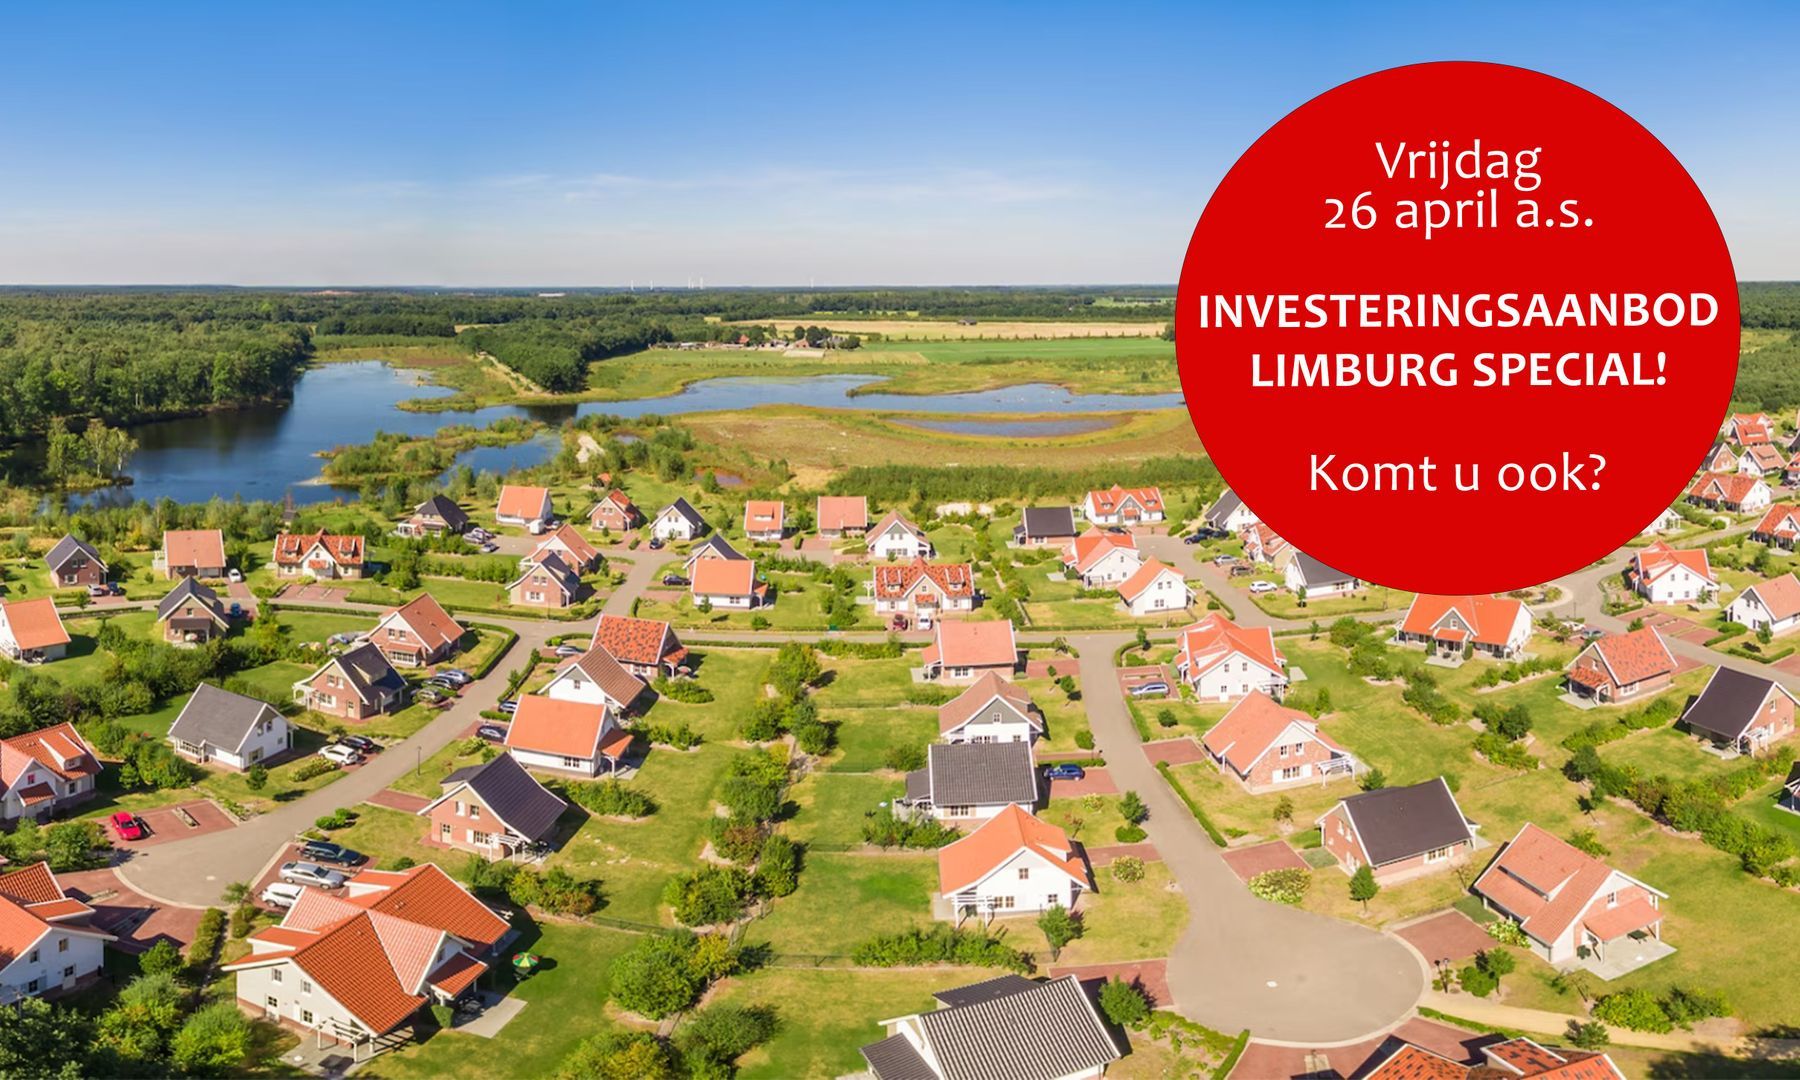 Investeringsaanbod Limburg Special!